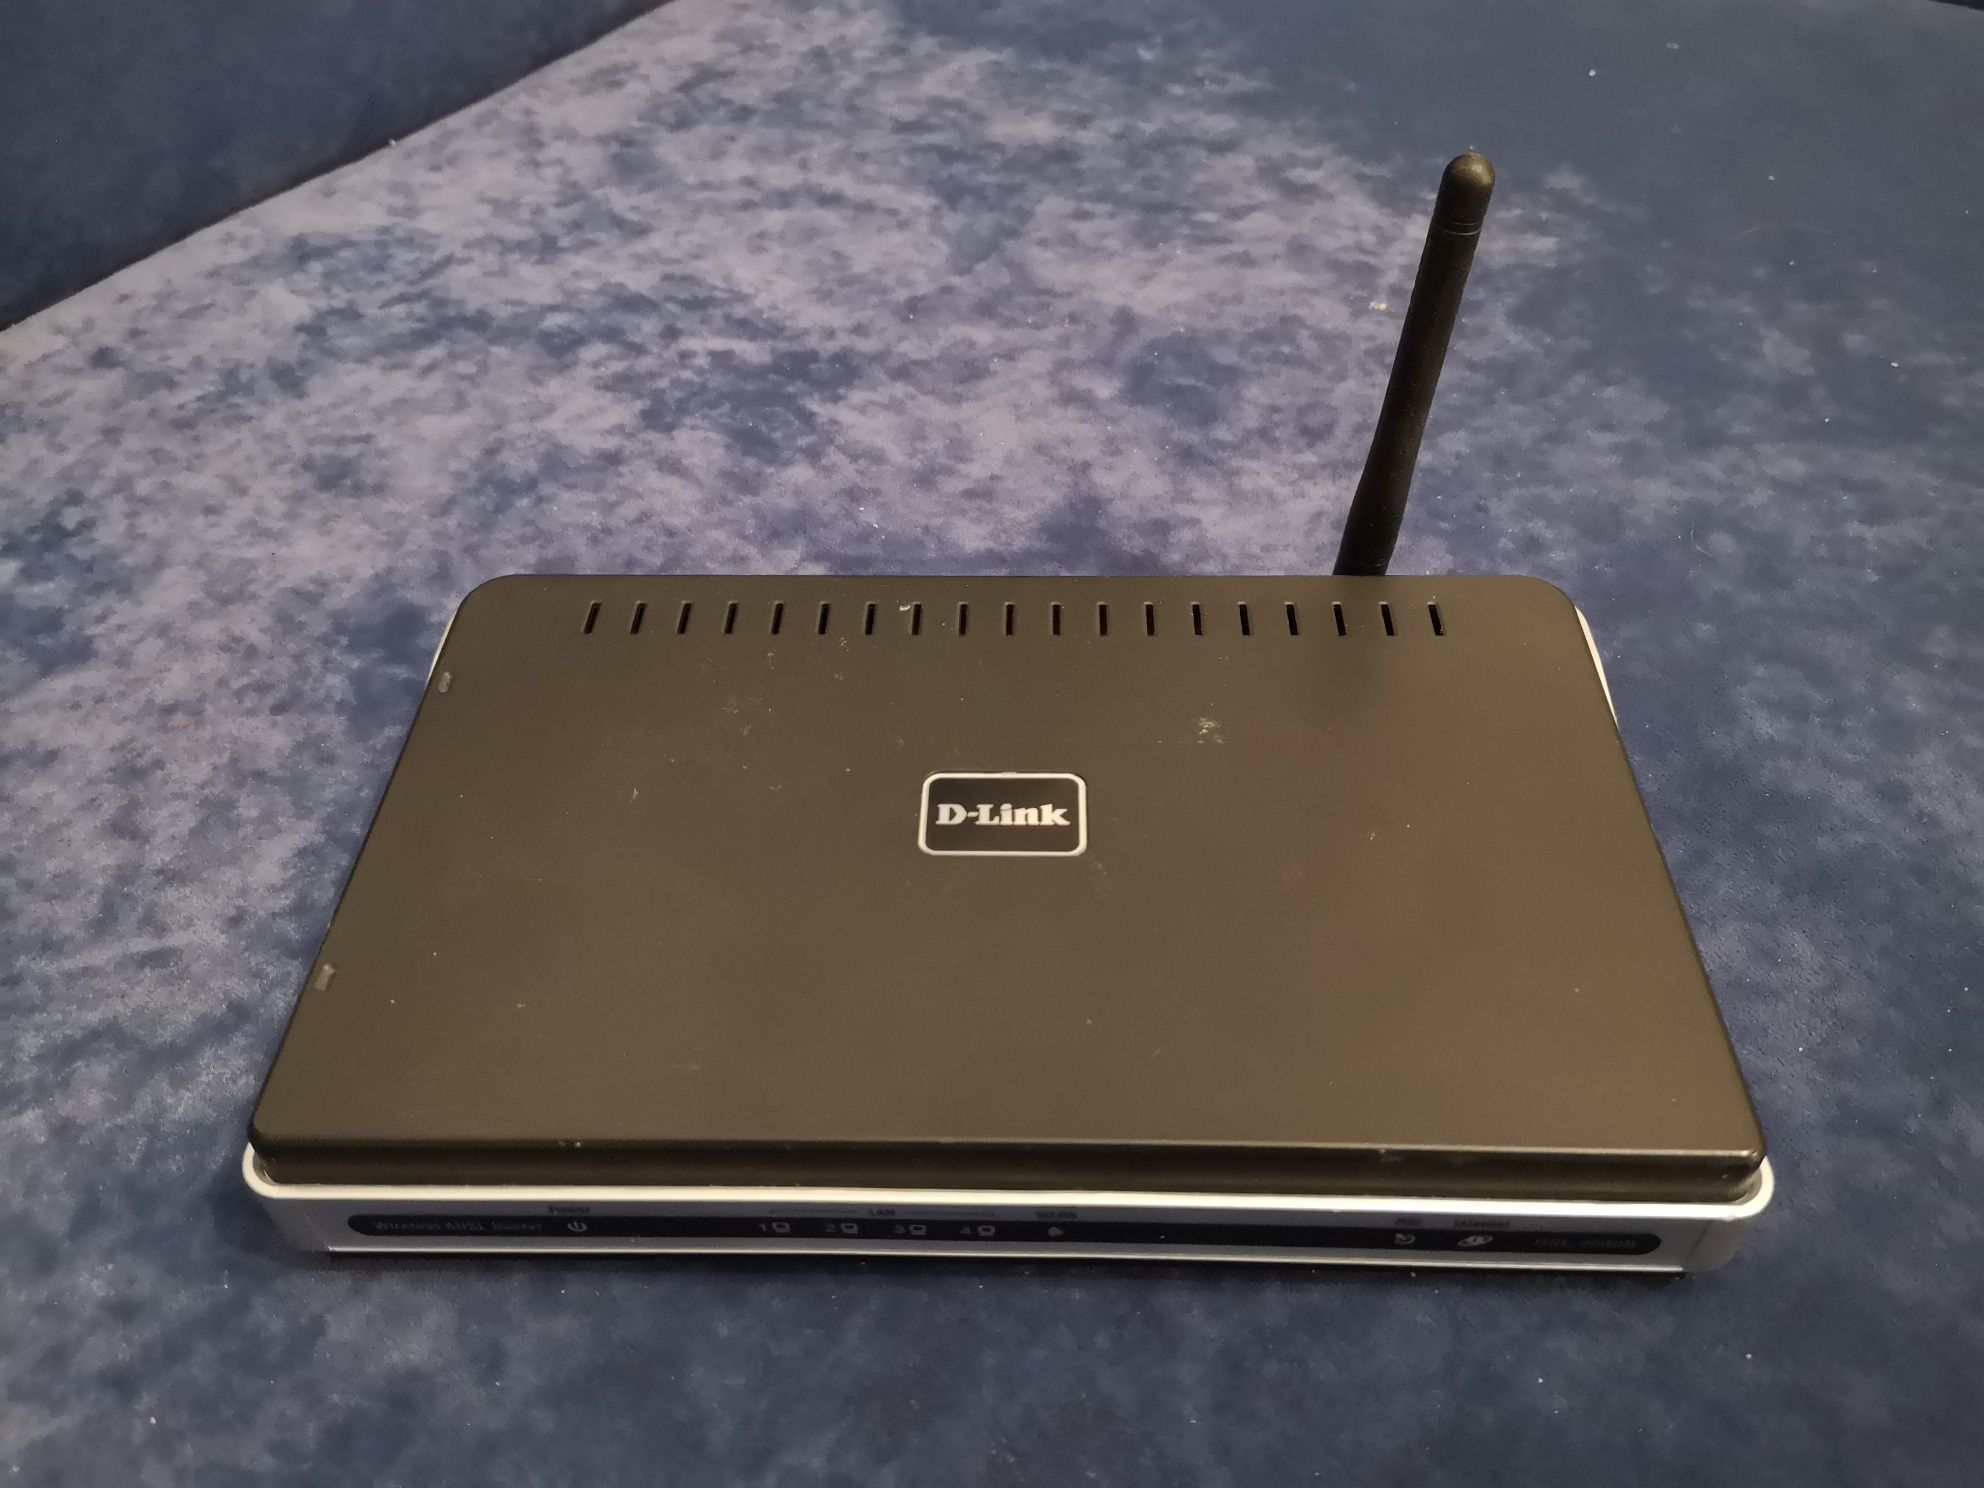 D-link DSL-2640B modem router